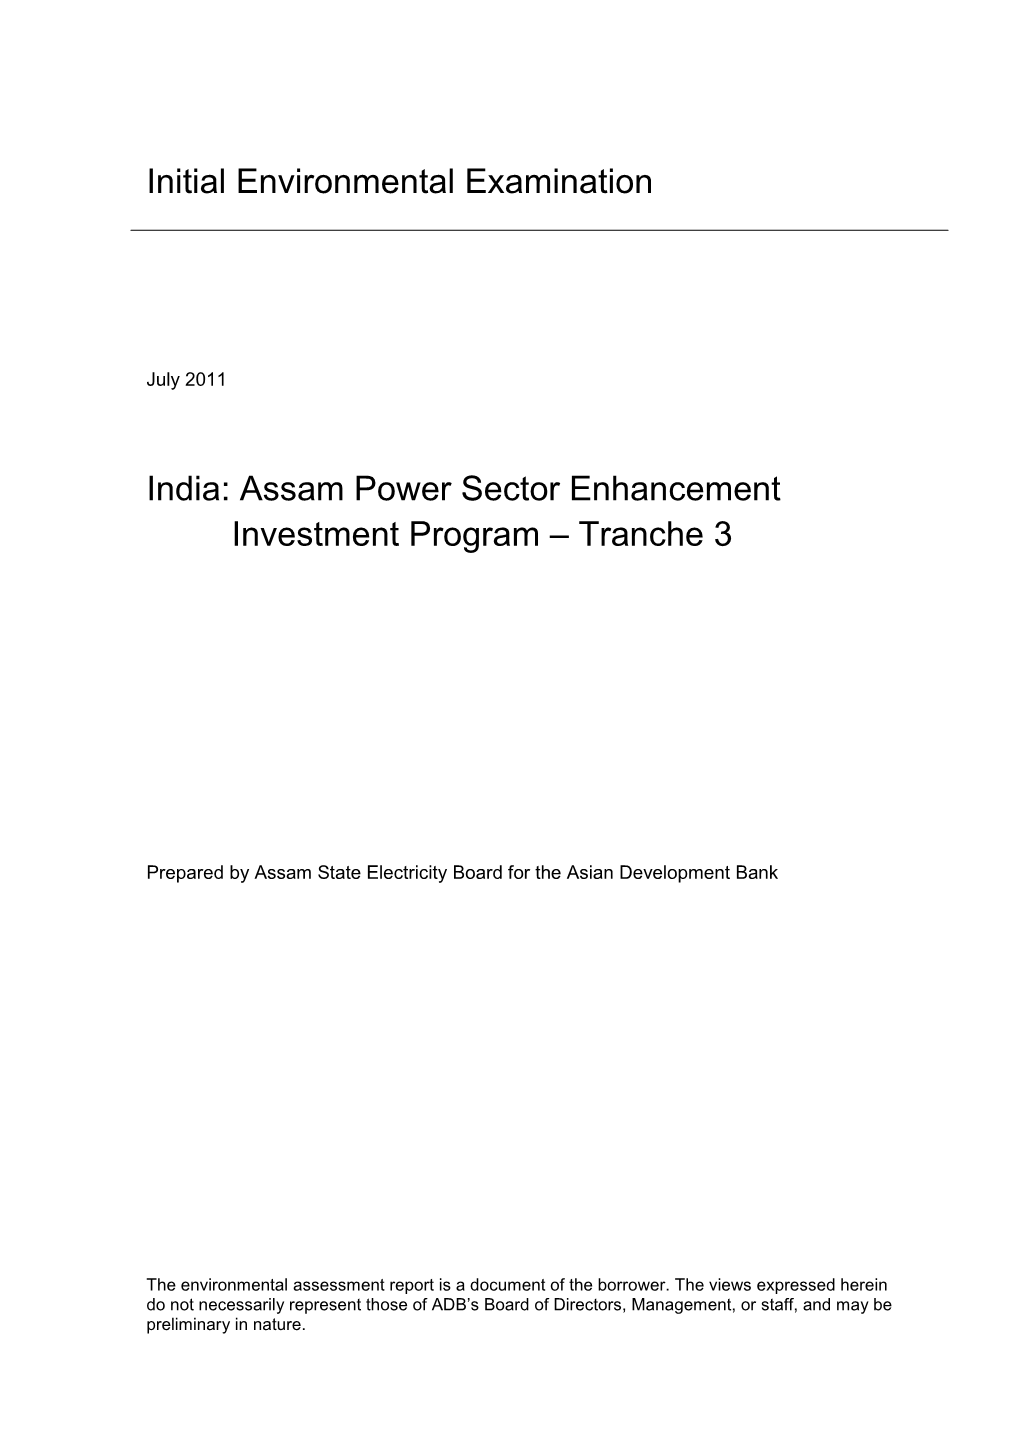 IEE: India: Assam Power Sector Enhancement Investment Program